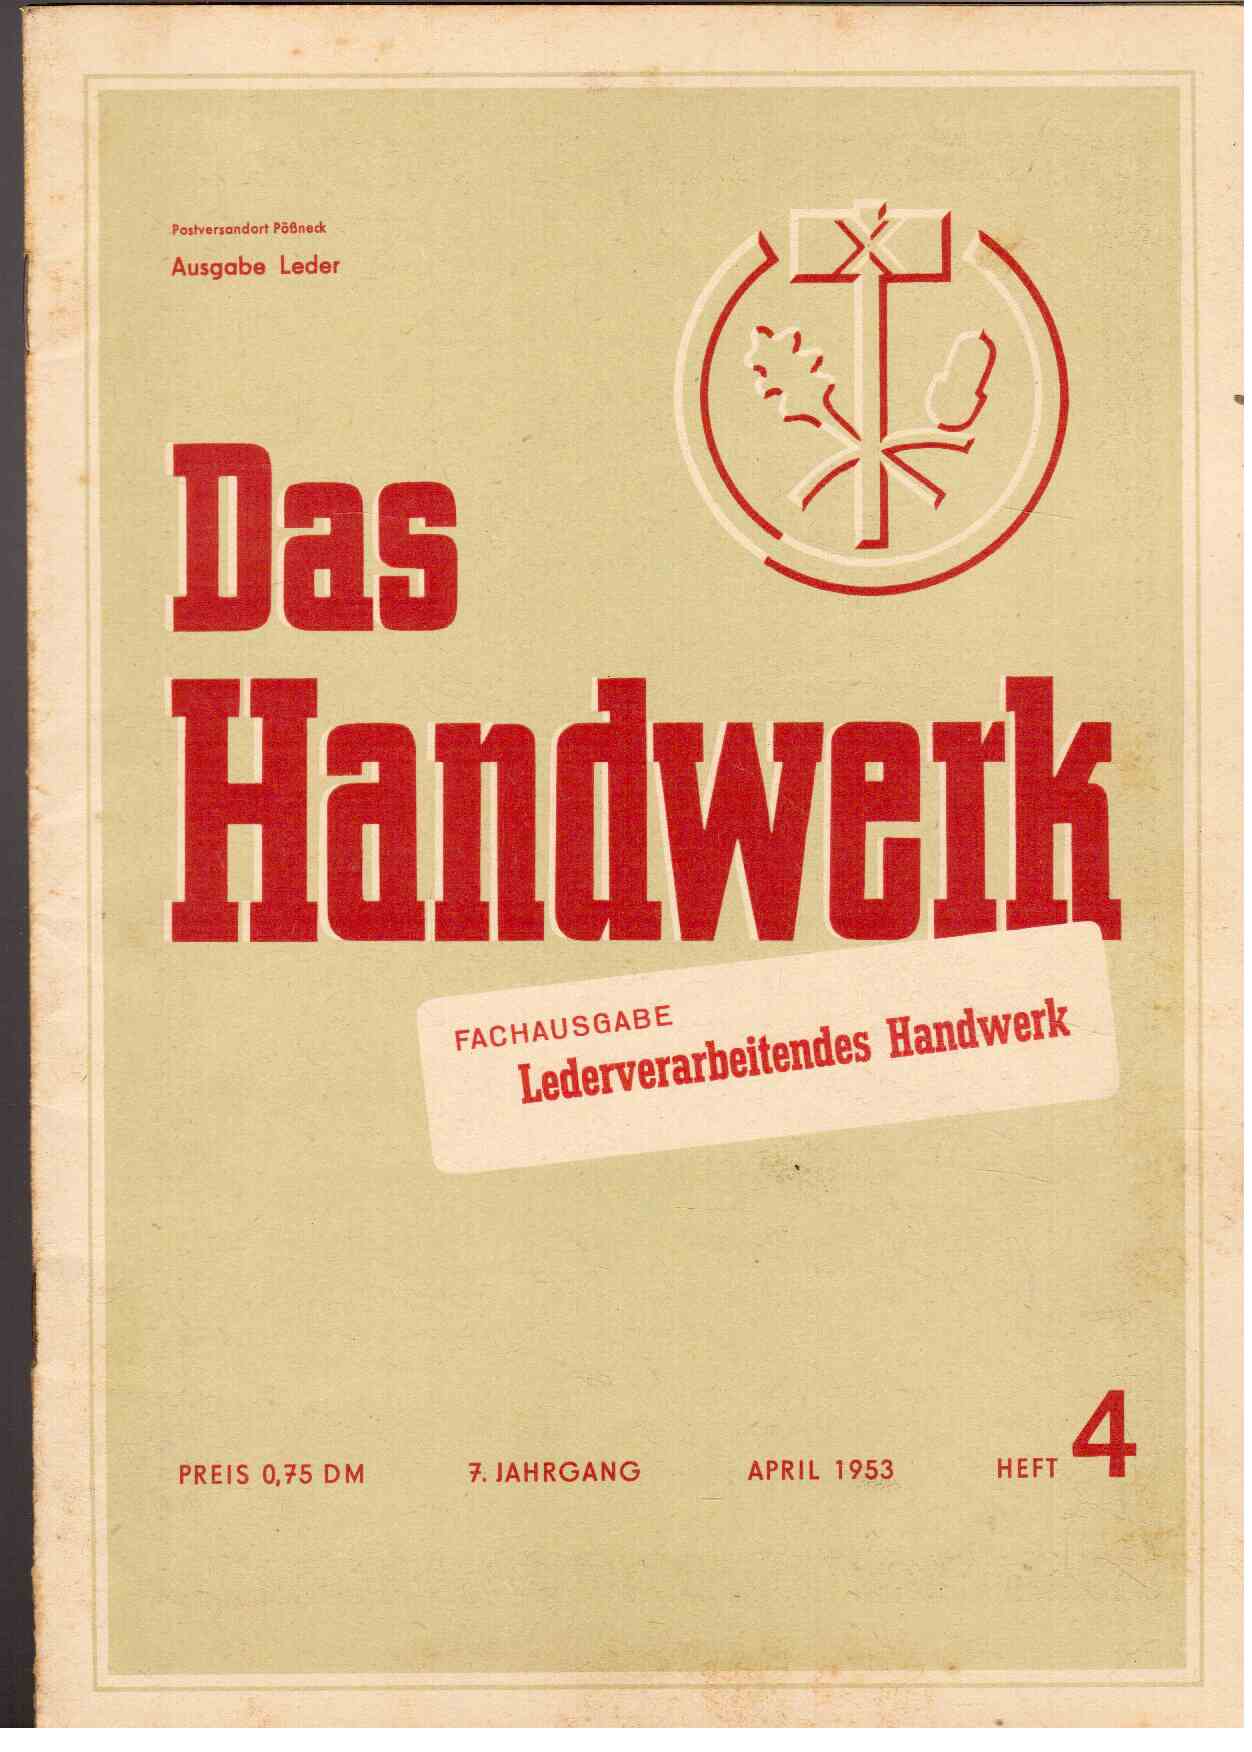 Das Handwerk. Fachausgabe : Lederverarbeitendes Handwerk. 7. Jahrgang, April 1953, Heft 4